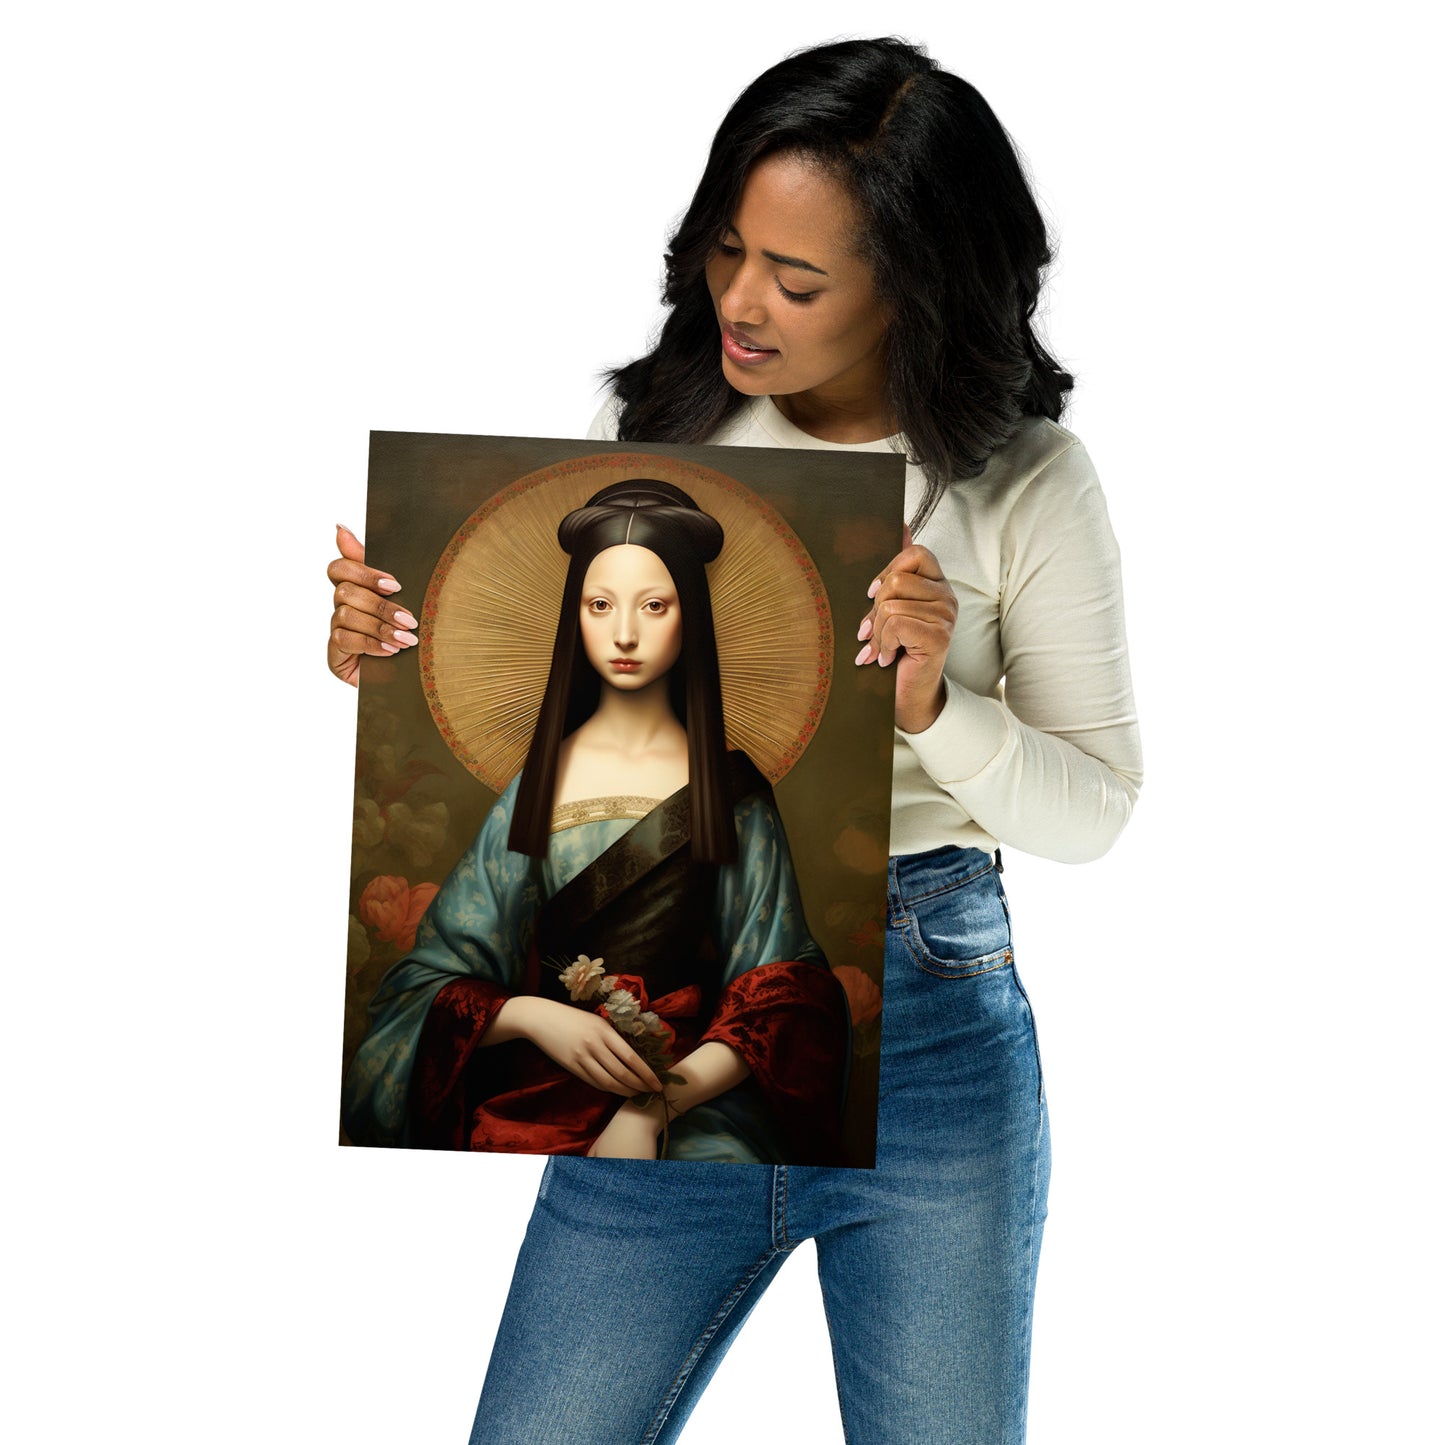 The young Mona Lisa